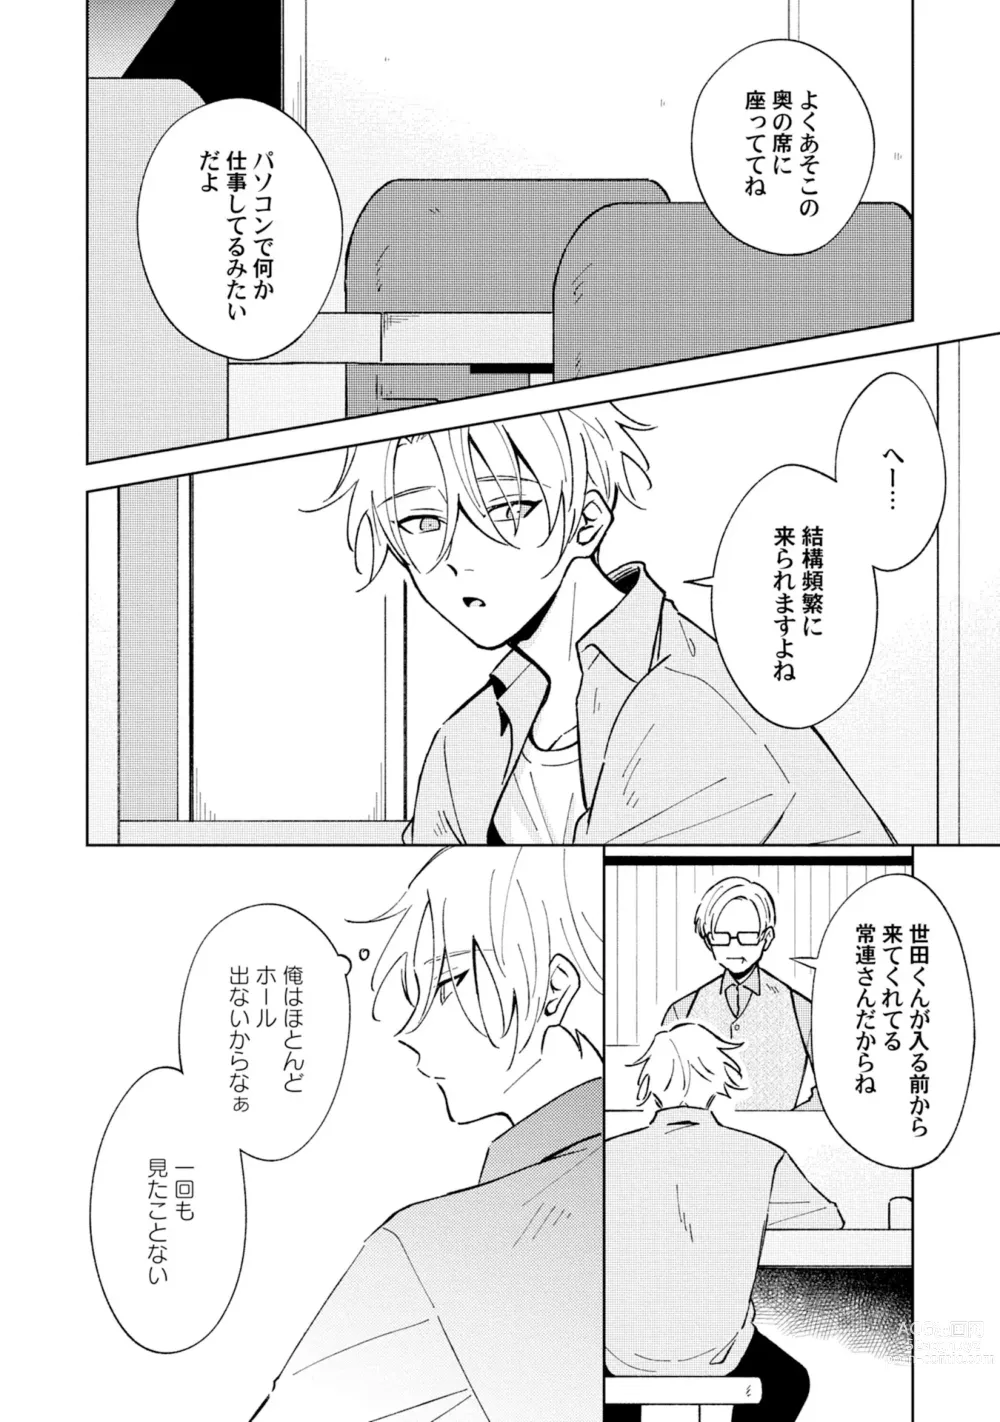 Page 10 of manga Toho 3-byou no Trouble Love Room 2